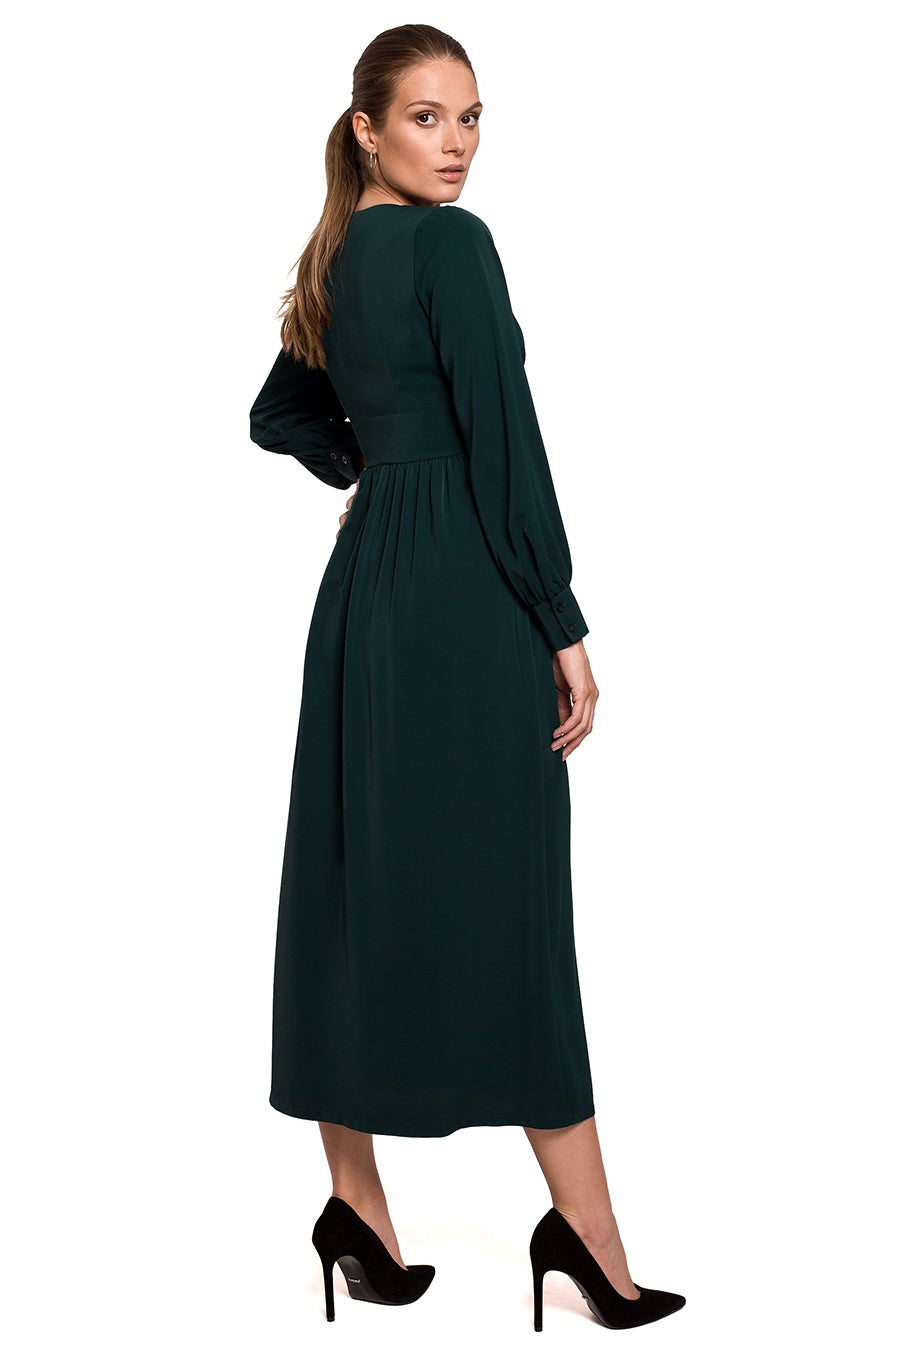 Γυναικείο φόρεμα Vittorina, Πράσινο 2